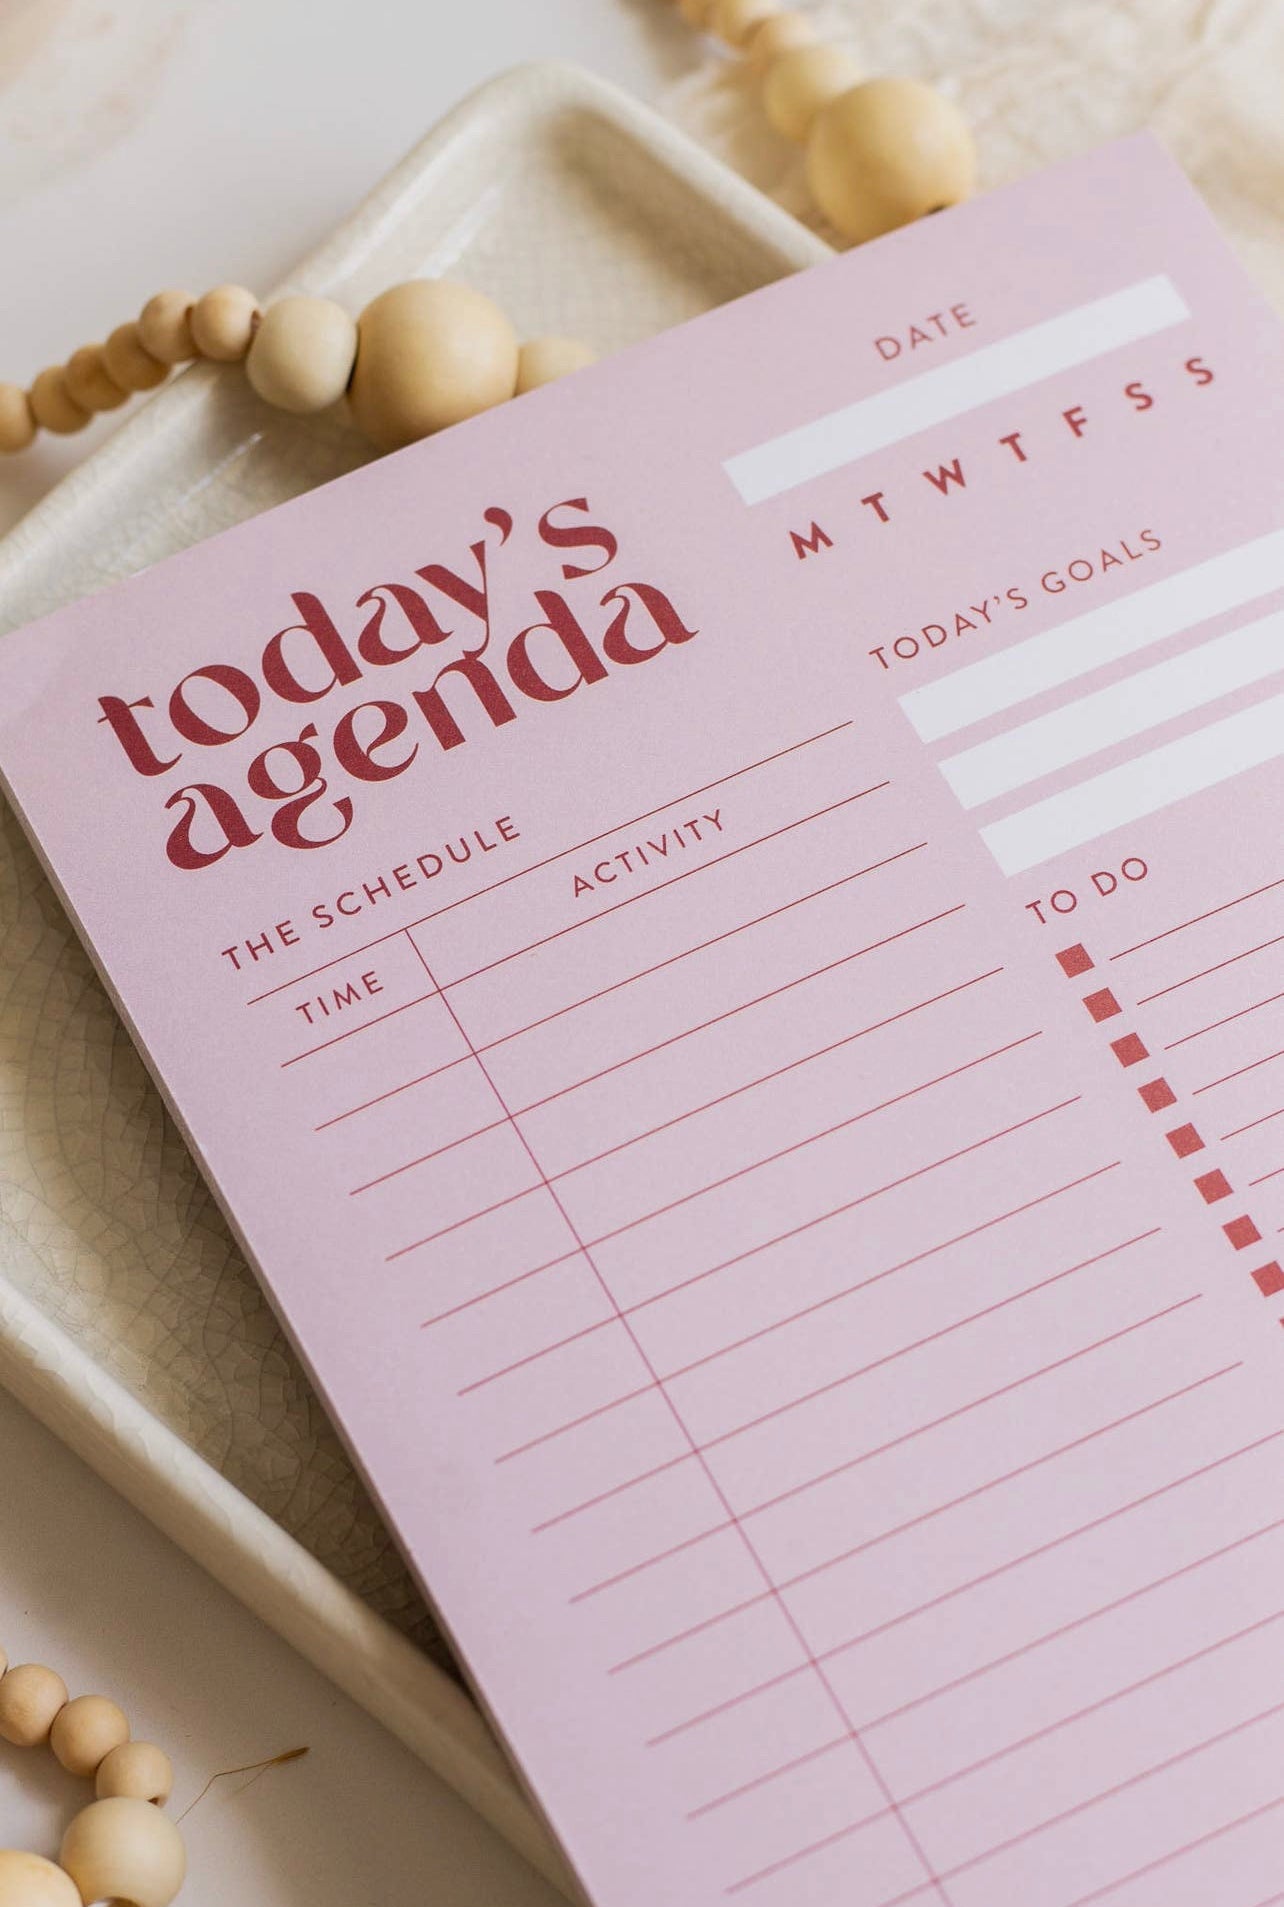 Today’s Agenda Daily Agenda Notepad